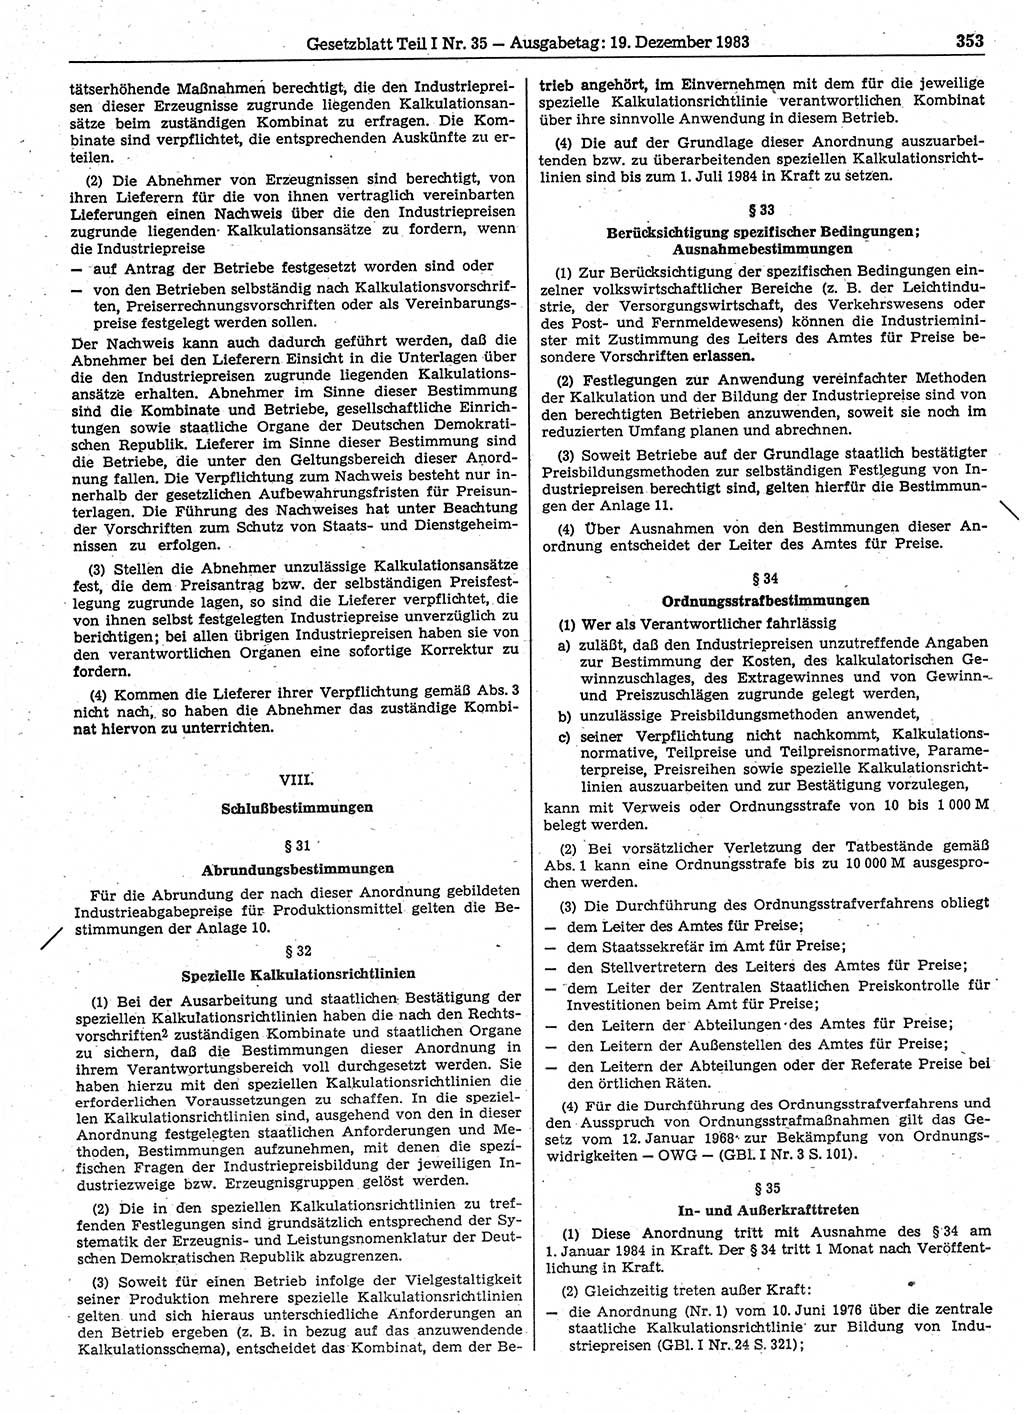 Gesetzblatt (GBl.) der Deutschen Demokratischen Republik (DDR) Teil Ⅰ 1983, Seite 353 (GBl. DDR Ⅰ 1983, S. 353)